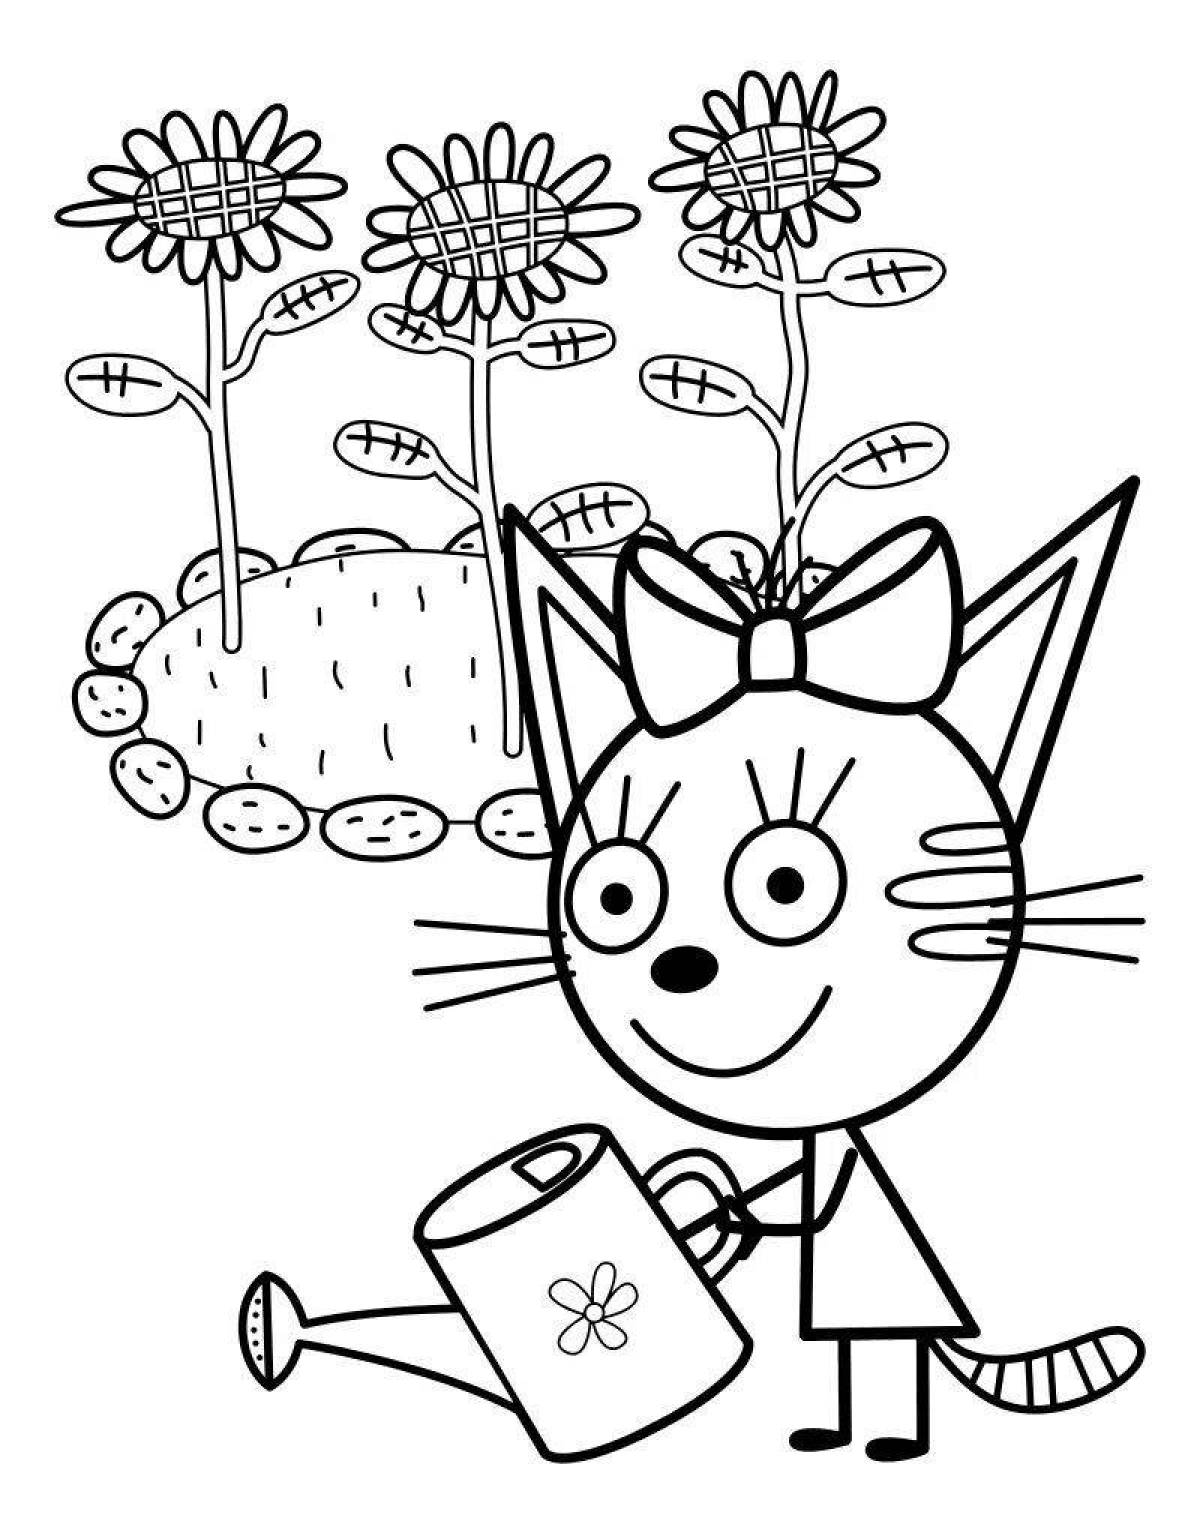 Coloring book for kids Mimimishki 3 cats